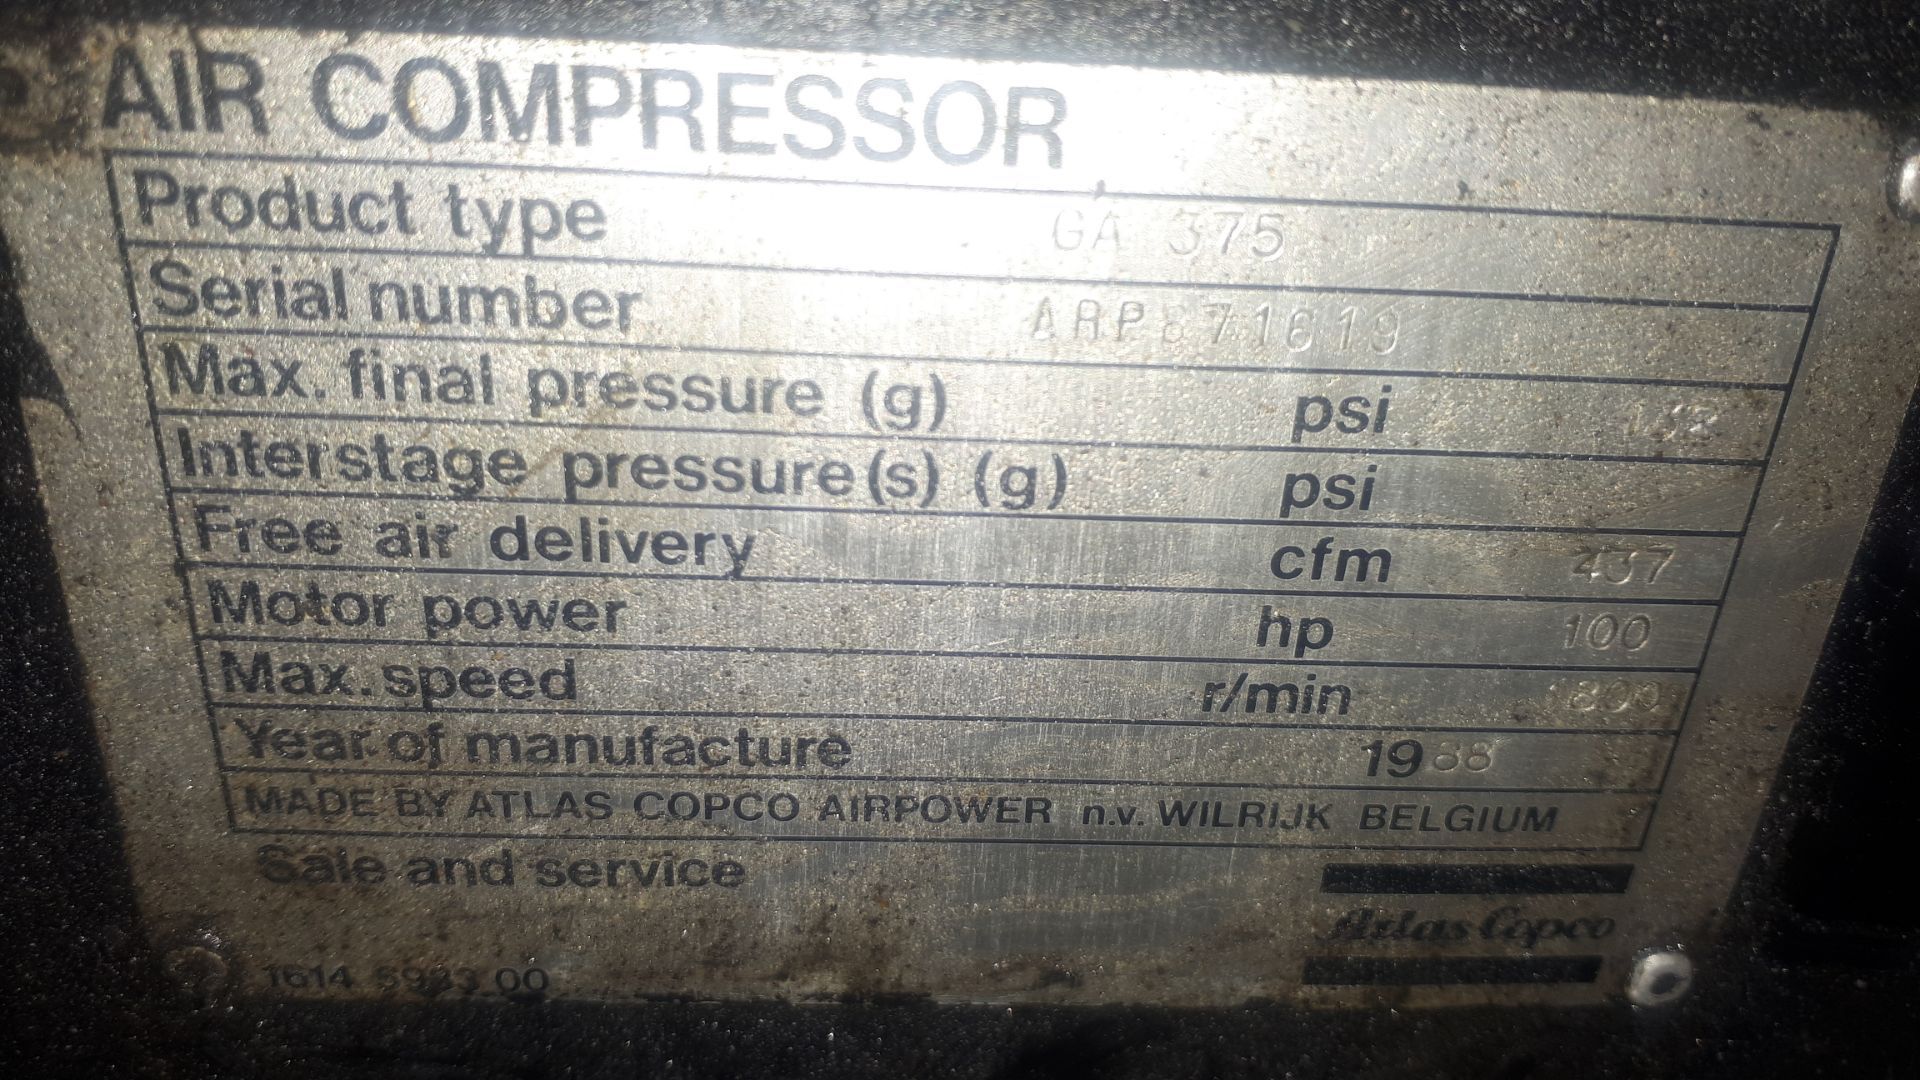 Atlas Copco Air Compressor  no loading fee - Image 5 of 5